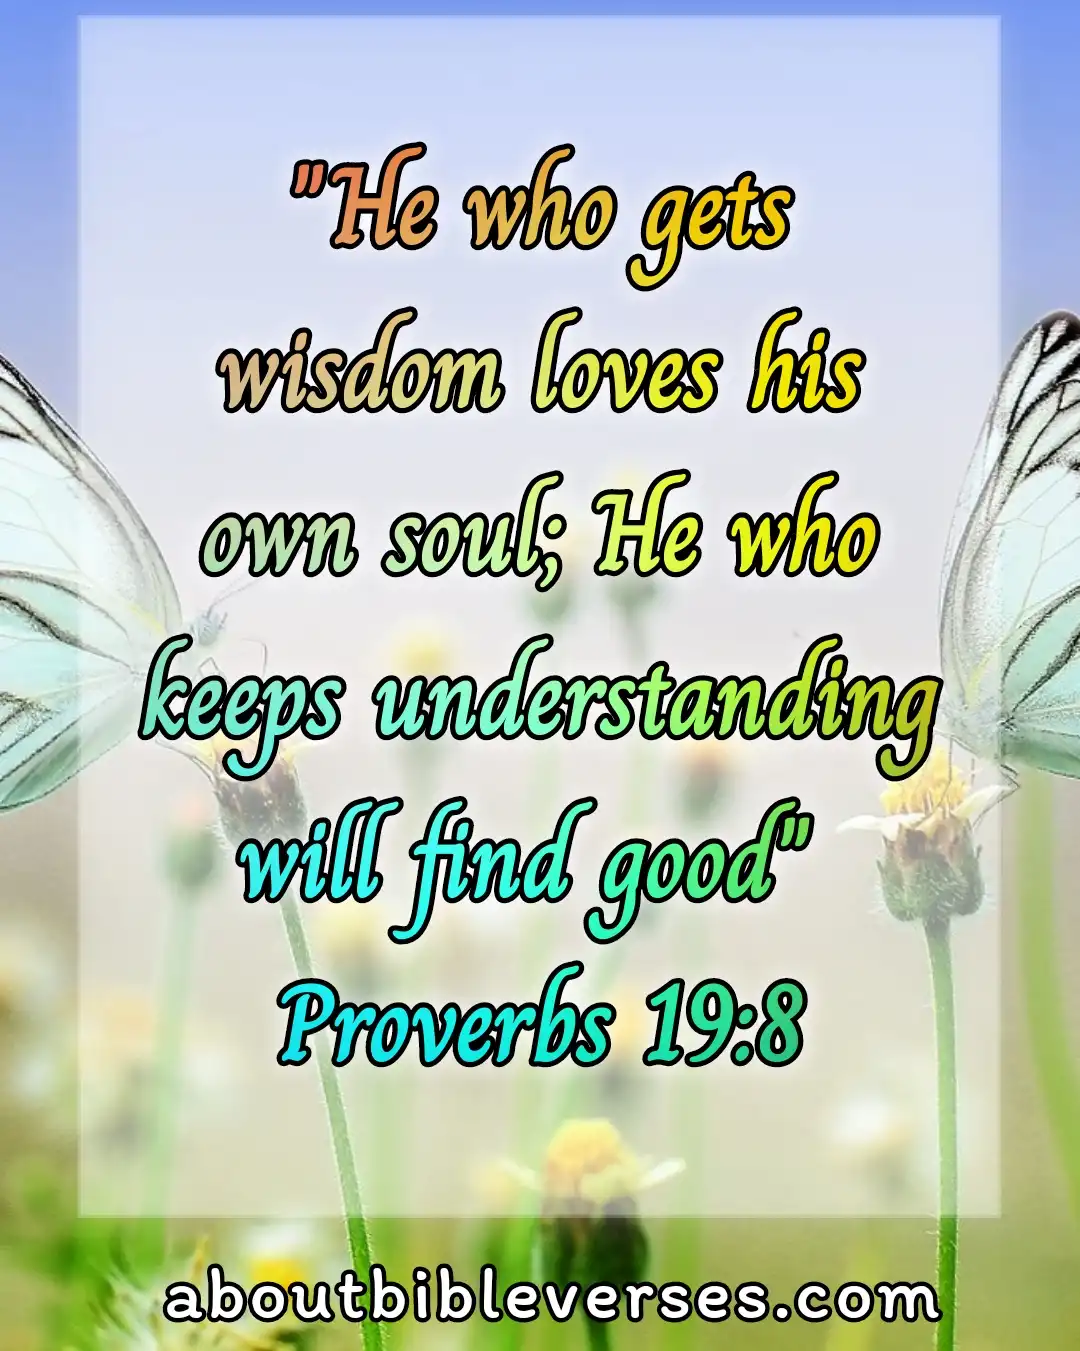 [Best] Más de 19 versículos bíblicos sobre la sabiduría y la sabiduría viene de Dios